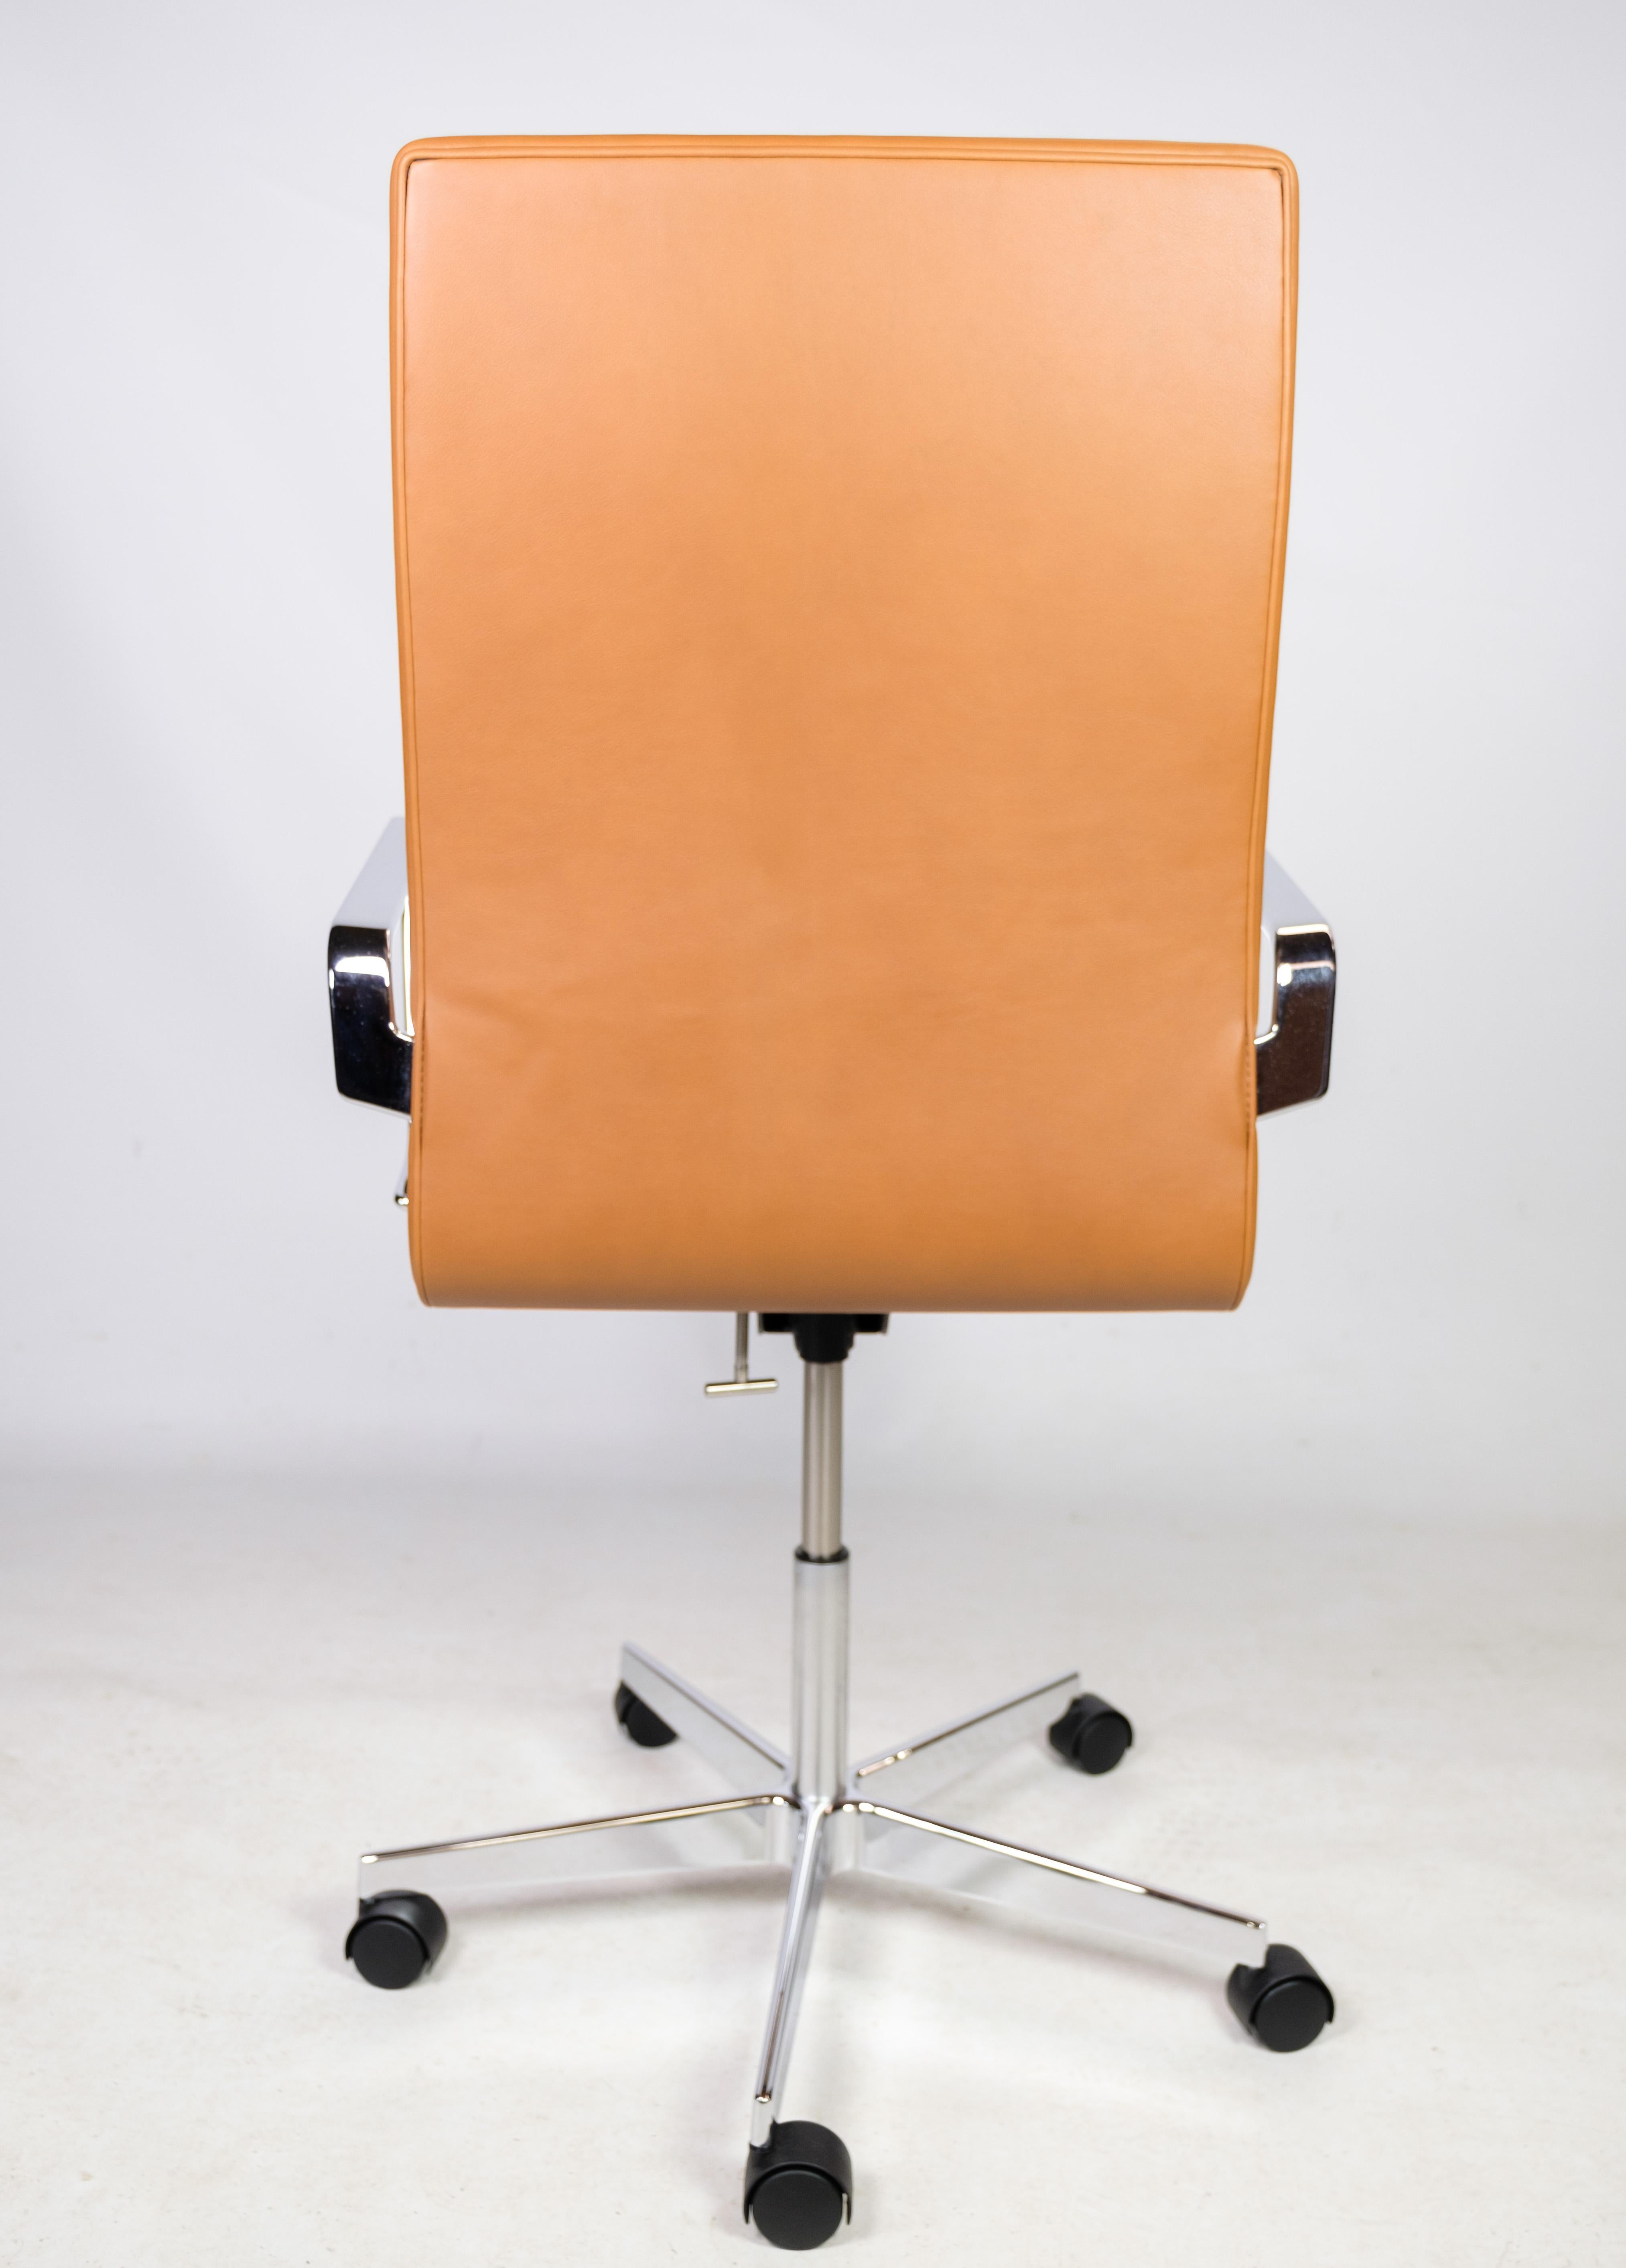 Fauteuil de bureau Design/One Classic, modèle 3293C, avec revêtement en cuir cognac d'origine, conçu par Arne Jacobsen en 1963 et fabriqué par Fritz Hansen. La chaise est en bon état d'usage.
H - 100-113, L - 60 cm, P - 60 cm et SH - 42-55 cm.